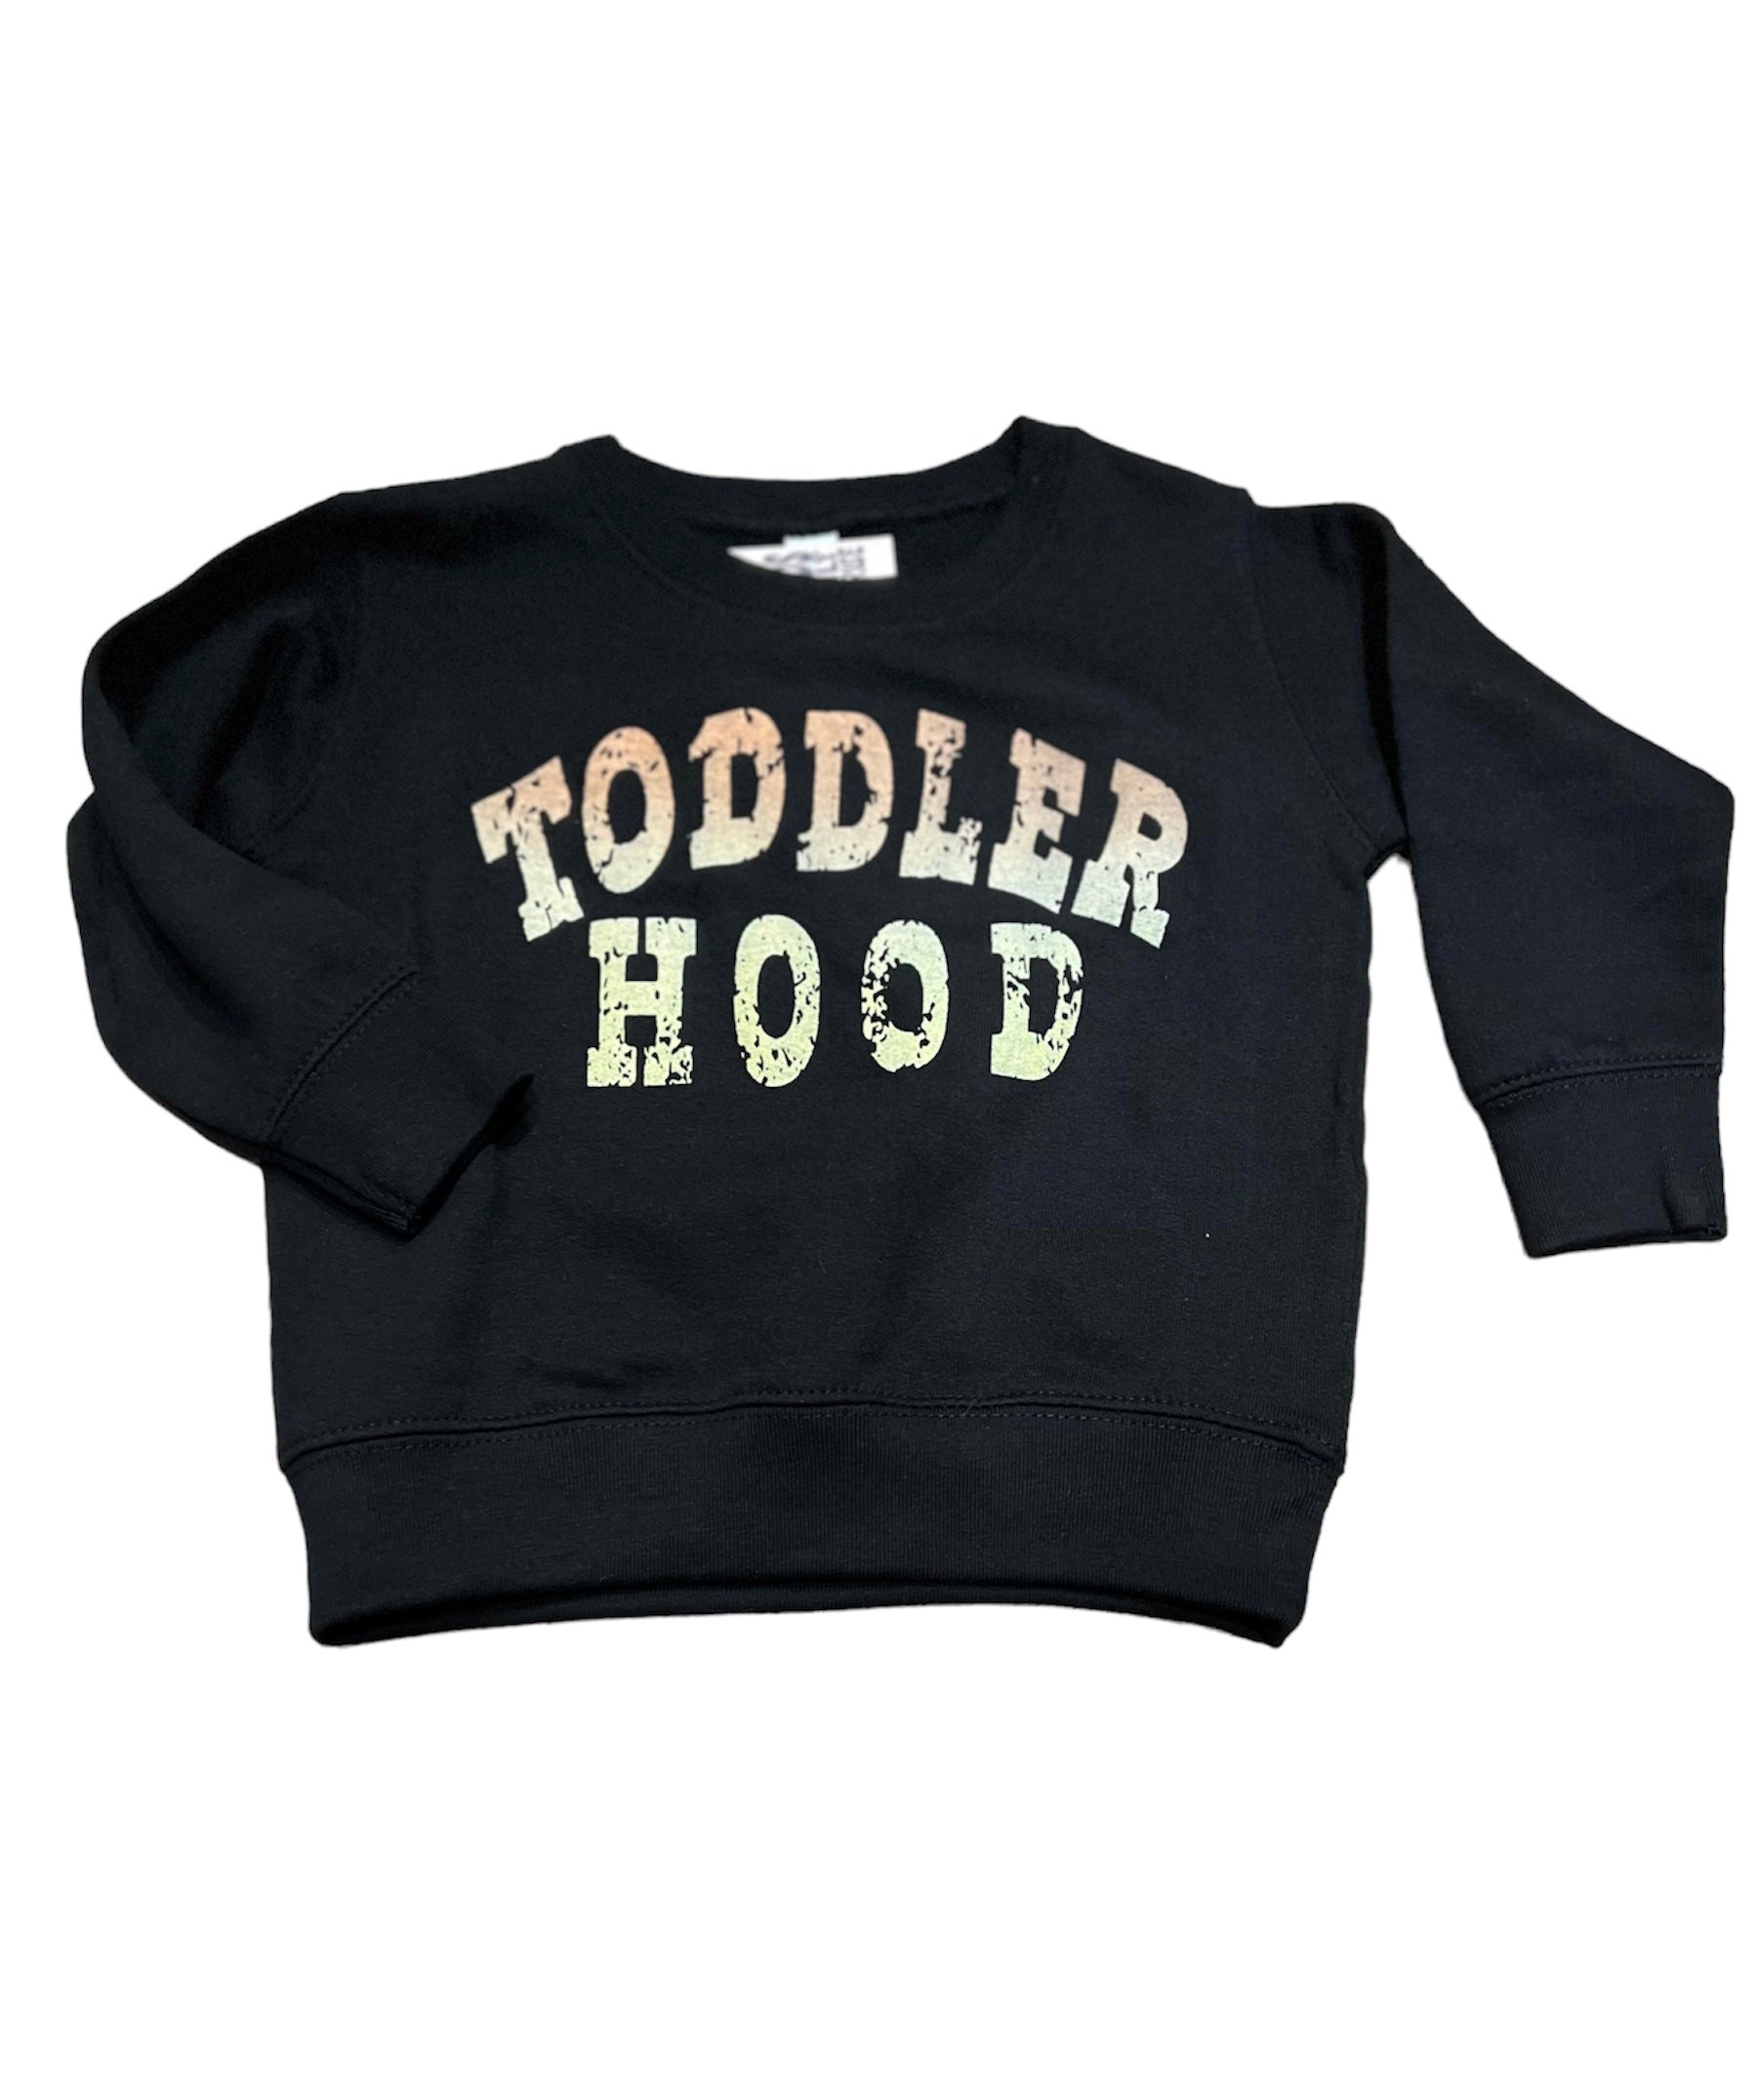 Toddler Hood